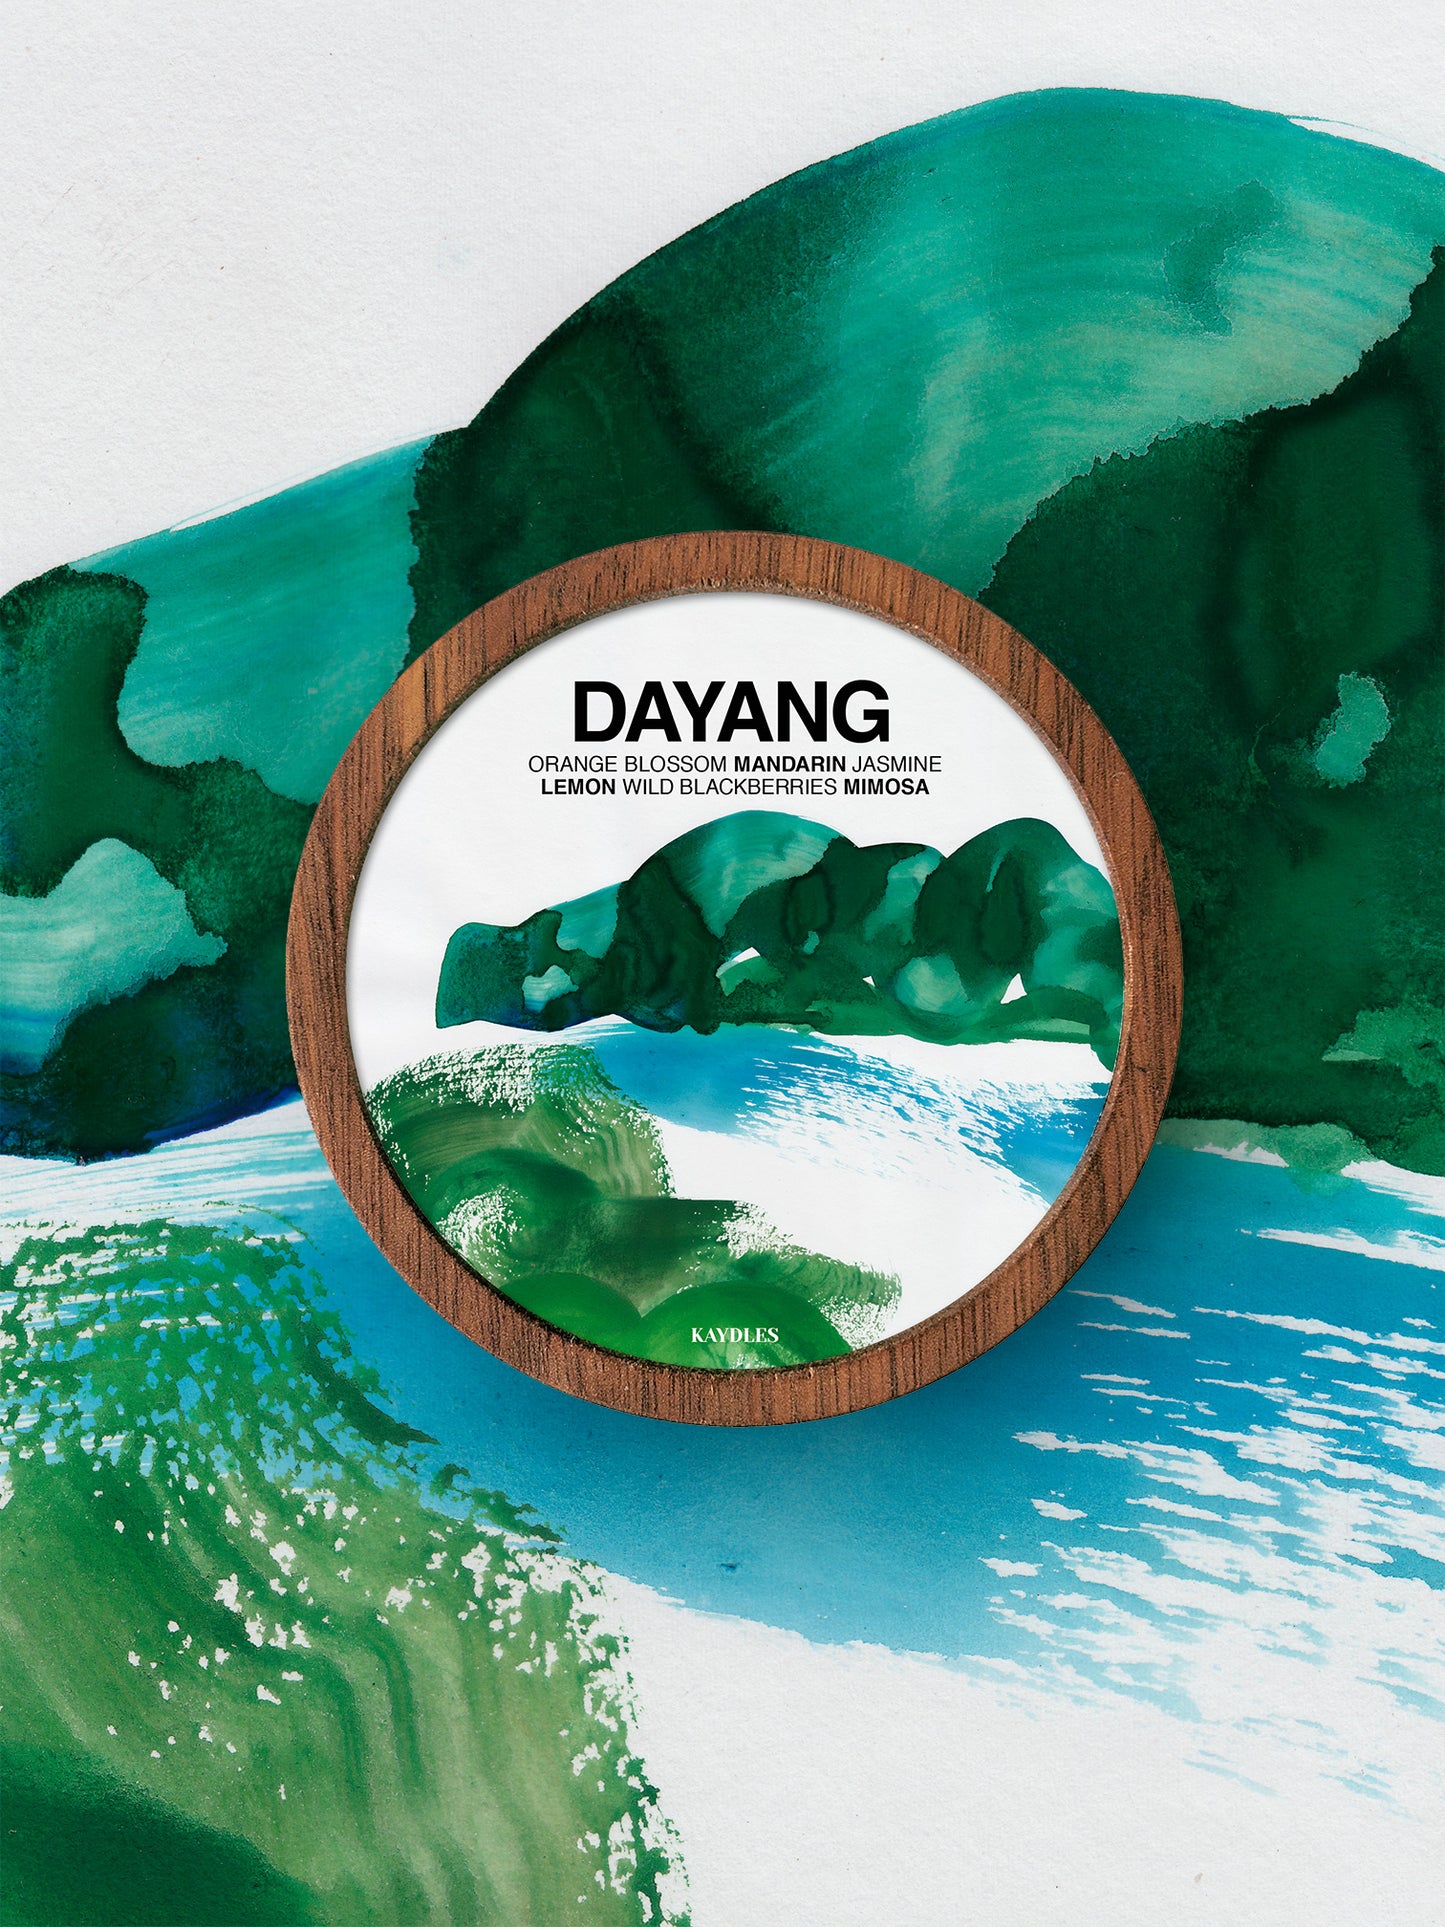 Kaydles x Wu Yanrong | Dayang